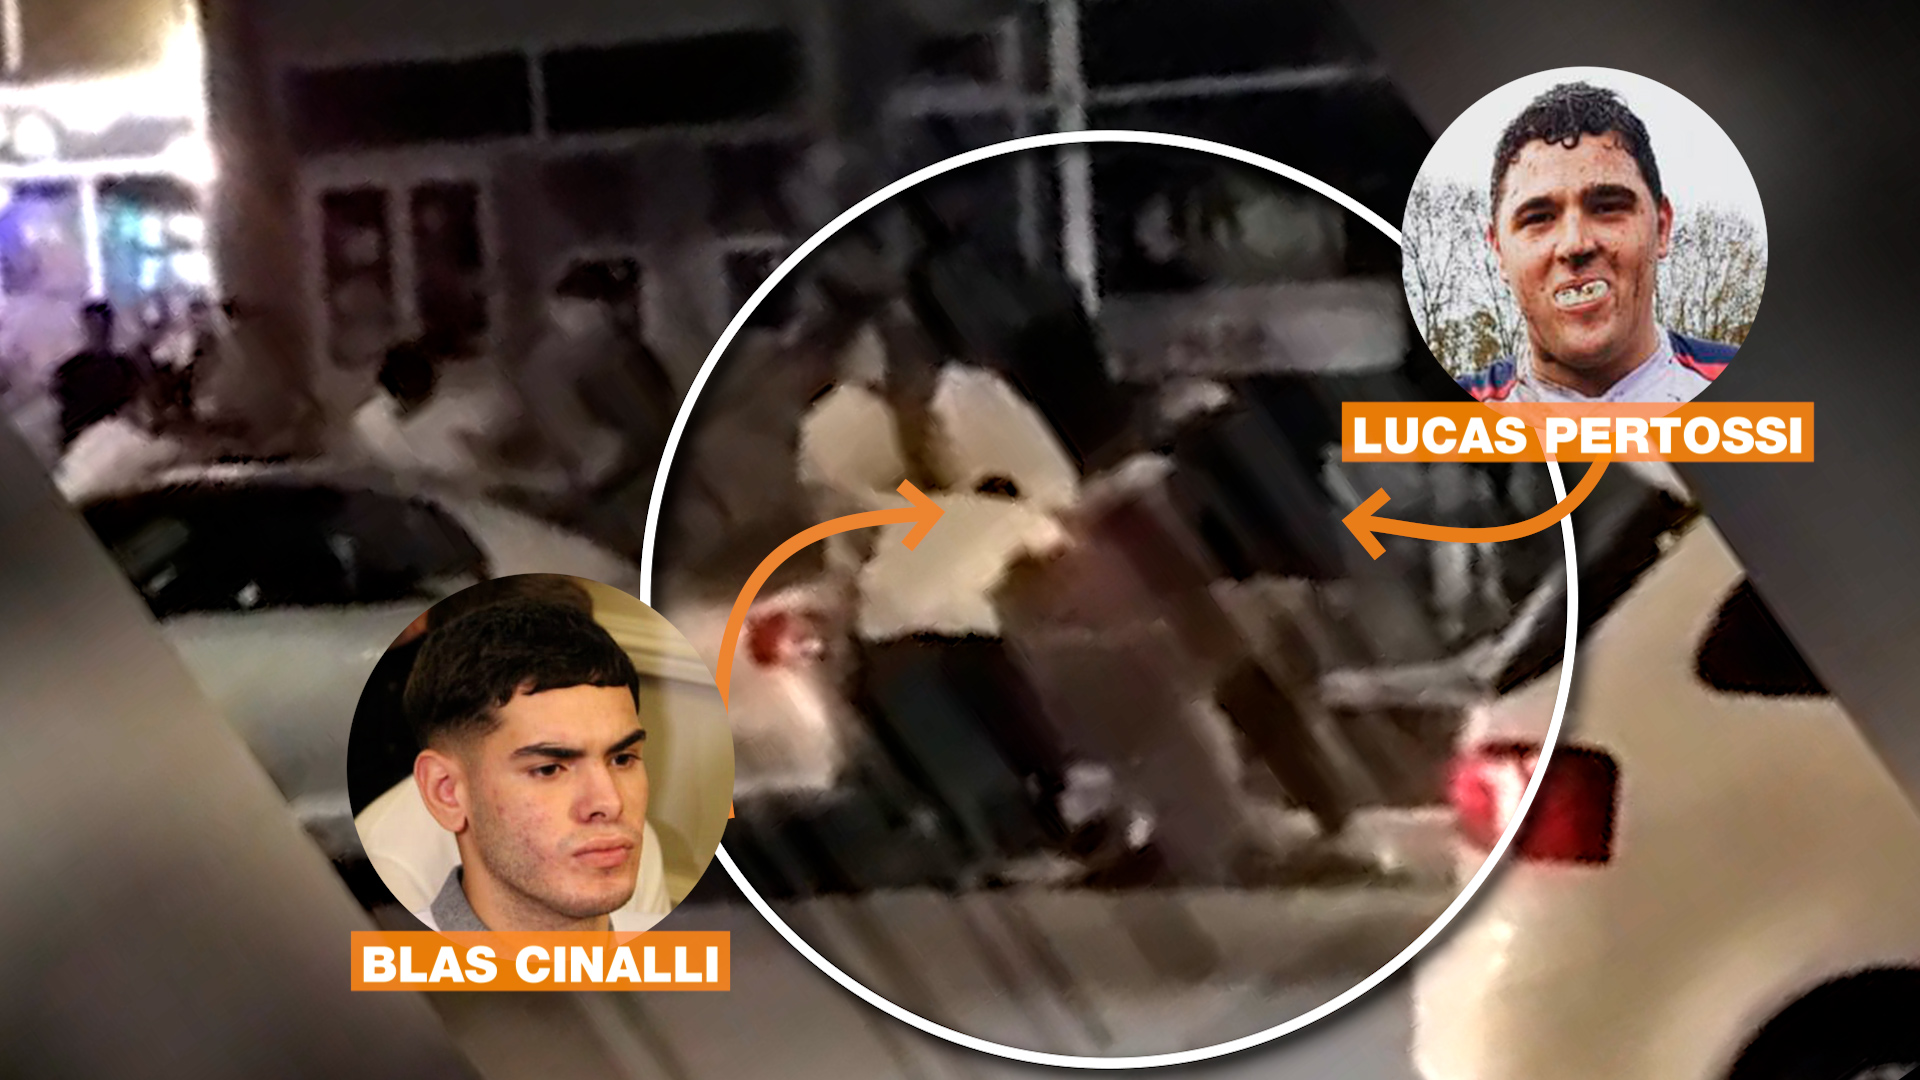 Blas Cinalli y Lucas Pertossi, identificados en medio del ataque